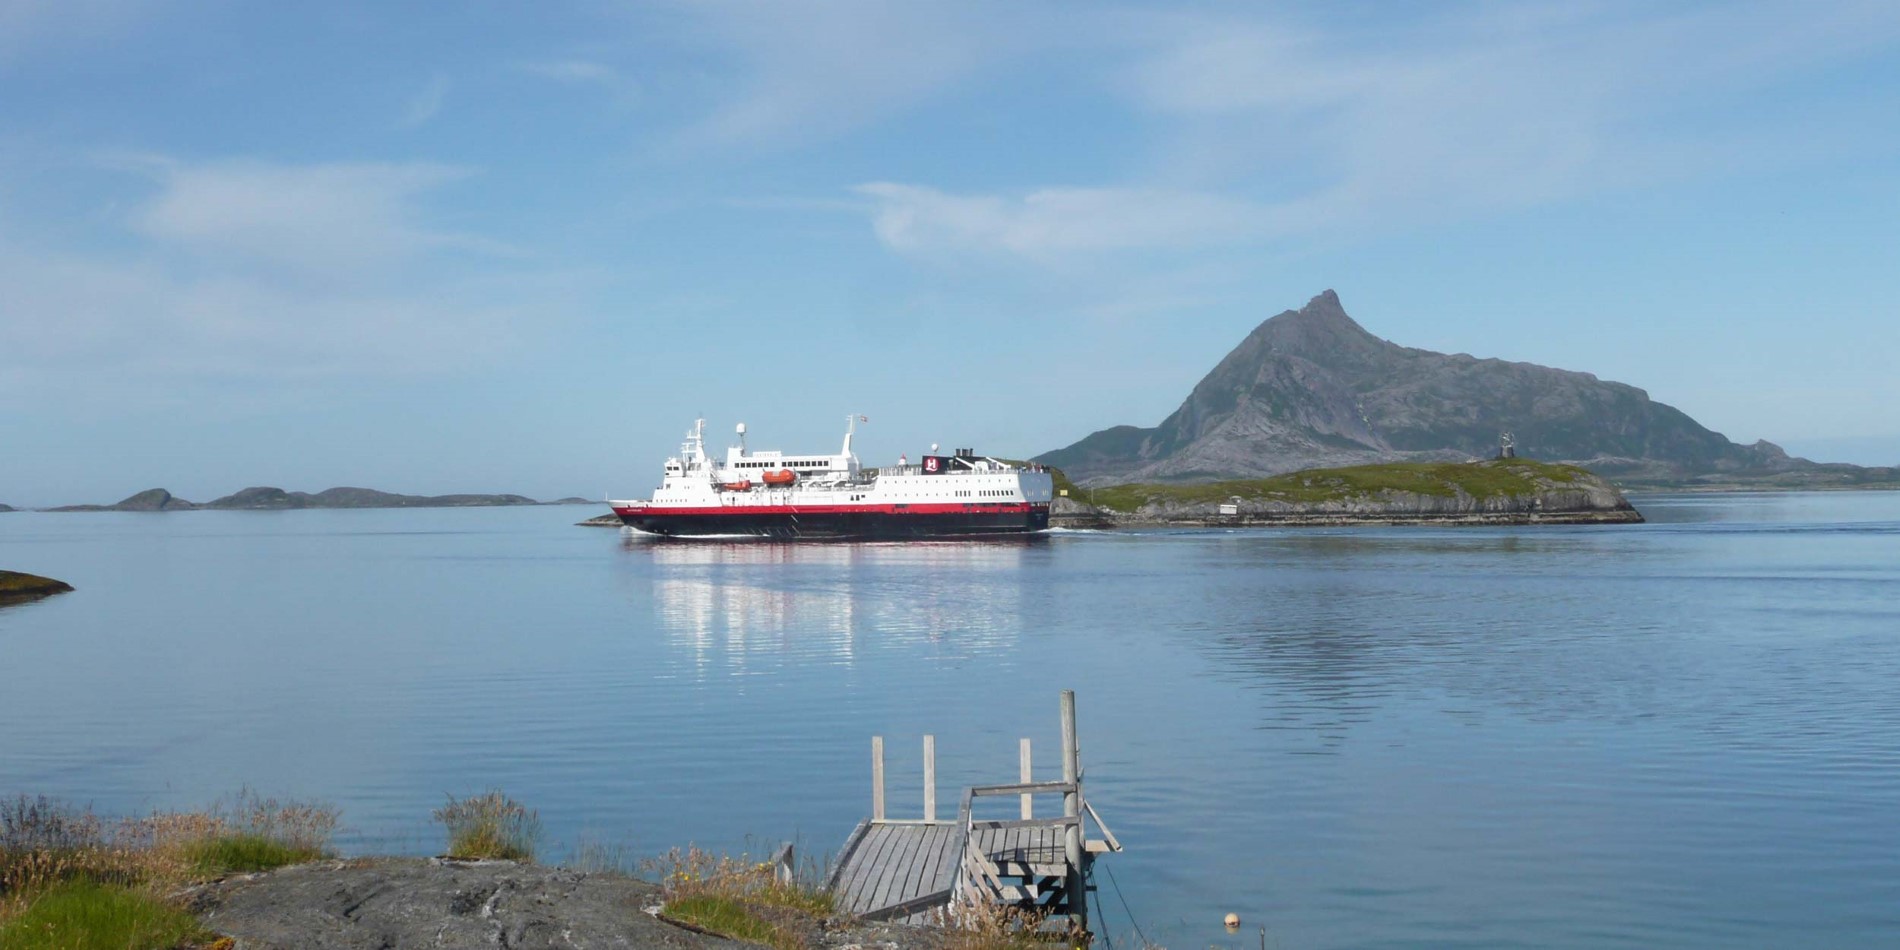 Hurtigrutens skip MS Vesterålen foran Hestmannen og Polarsirkelen.